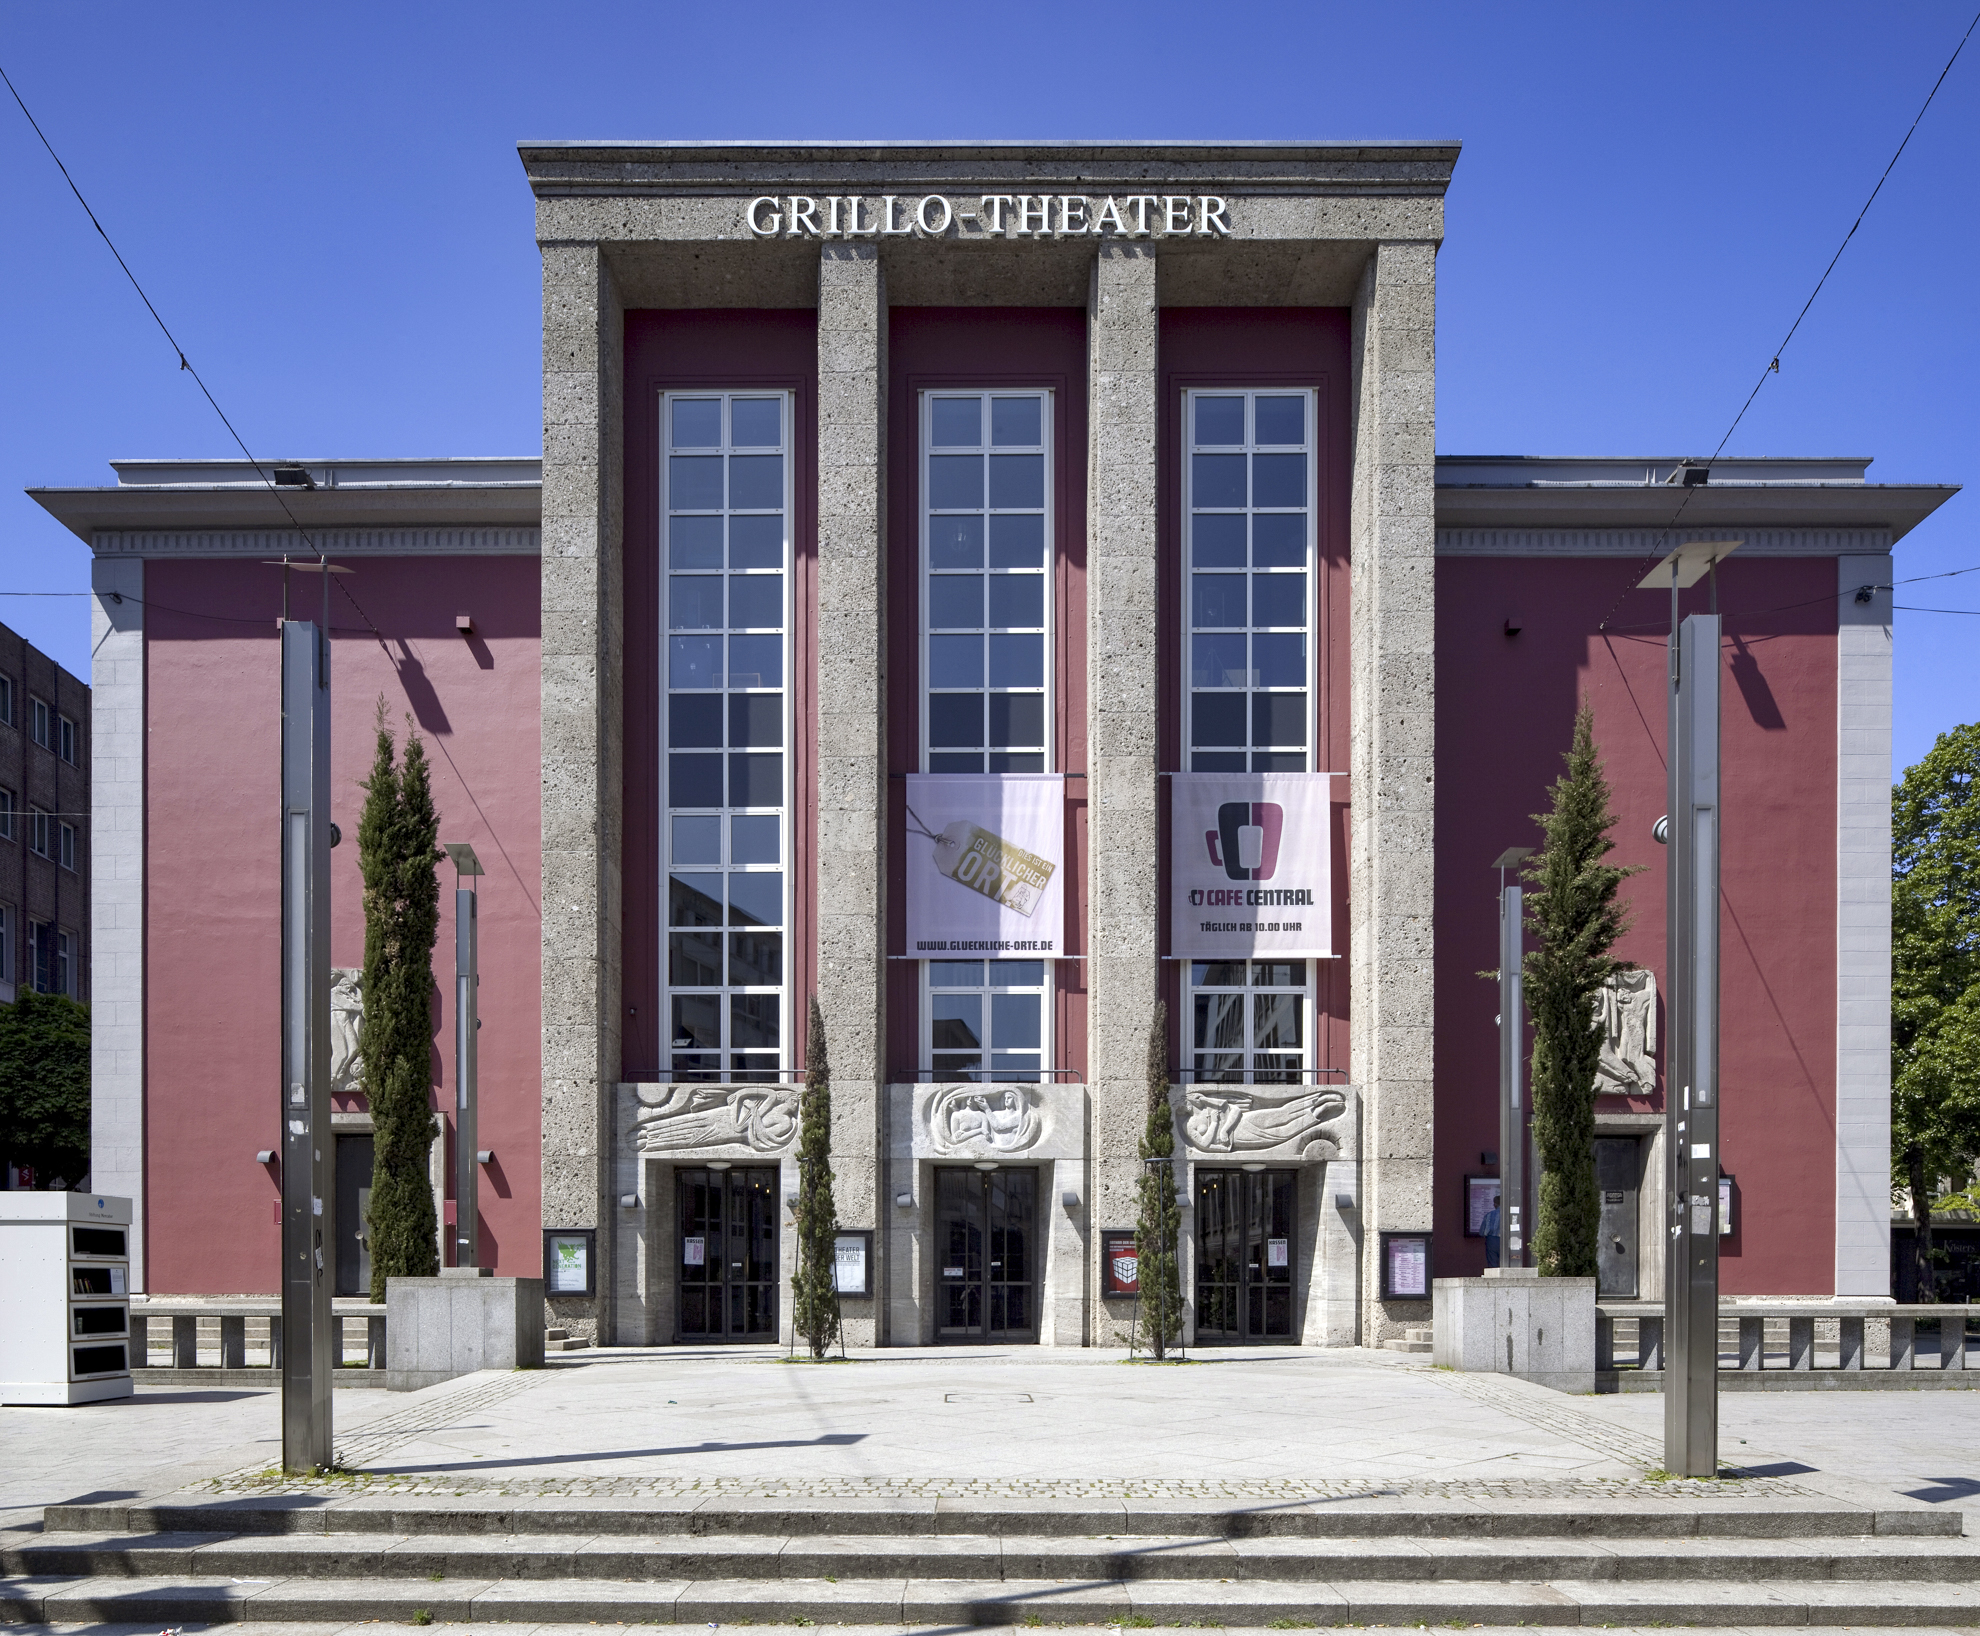 Grillo-Theater in der Essener Innenstadt, 1892 nach Entwürfen von Heinrich Seeling im neobarocken Stil erbaut, nach Kriegszerstörungen von Werner Ruhnau vereinfacht wiederaufgebaut. 1990 erfolgte eine Renovierung und der Umbau der Innenräume.